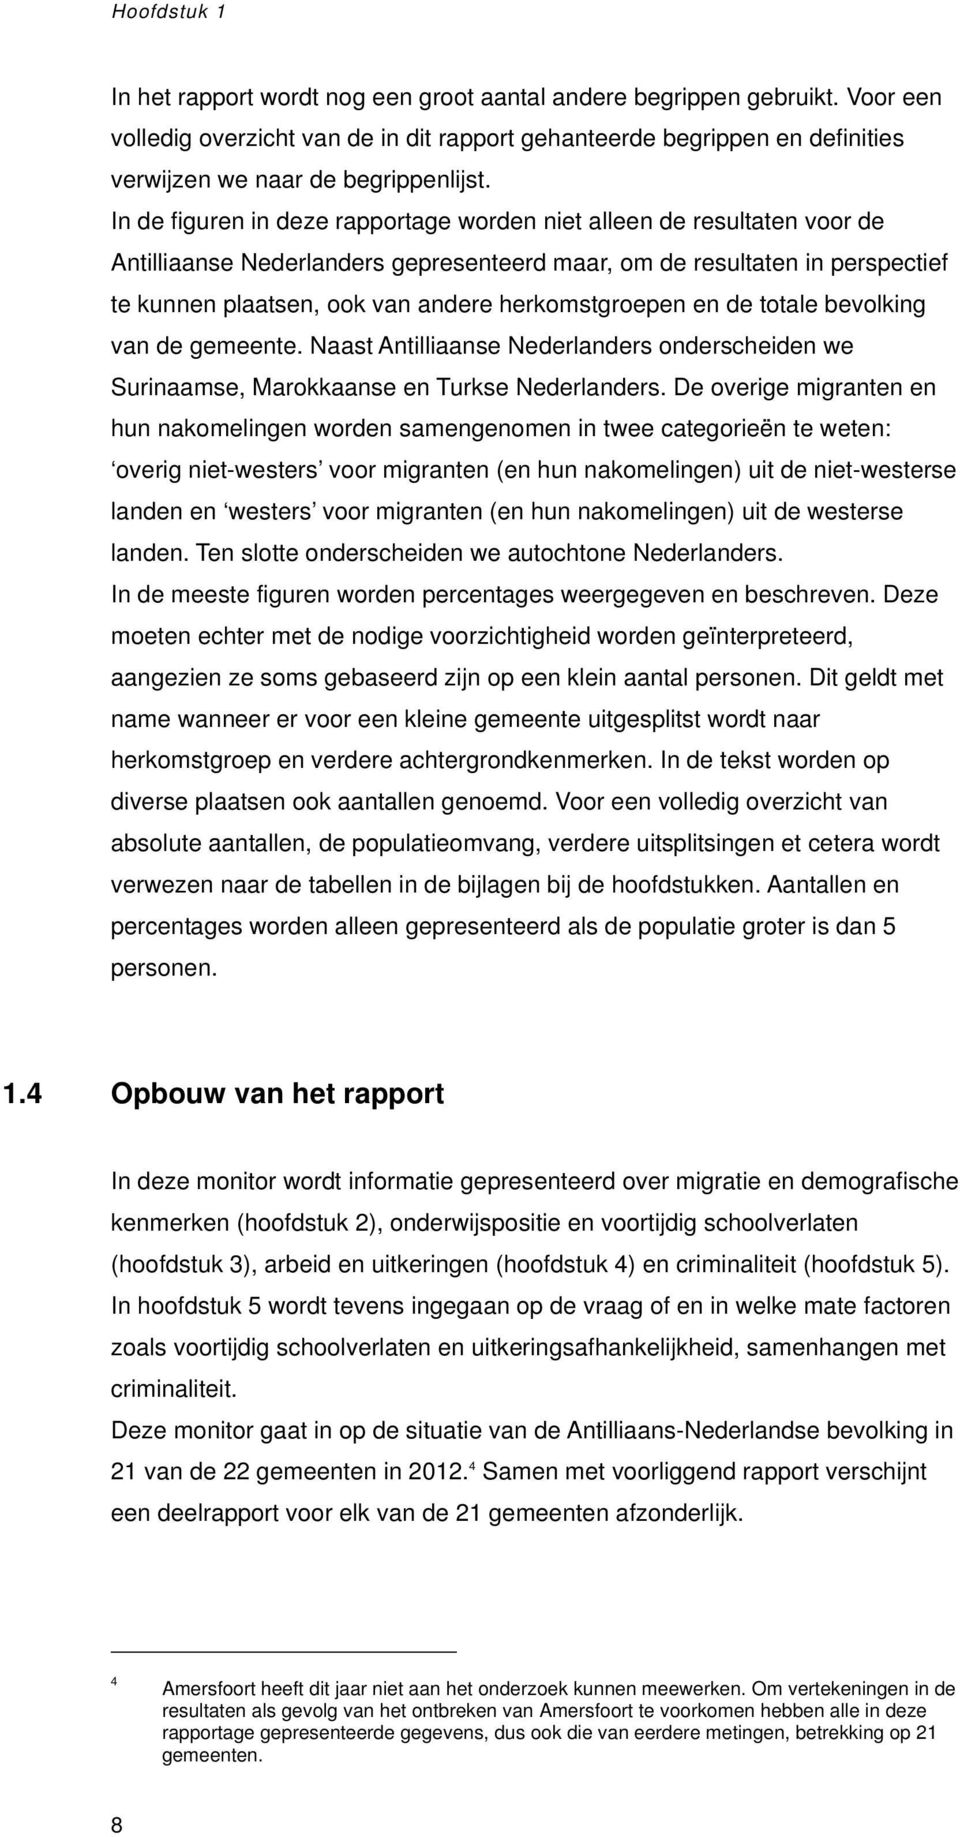 In de figuren in deze rapportage worden niet alleen de resultaten voor de Antilliaanse Nederlanders gepresenteerd maar, om de resultaten in perspectief te kunnen plaatsen, ook van andere